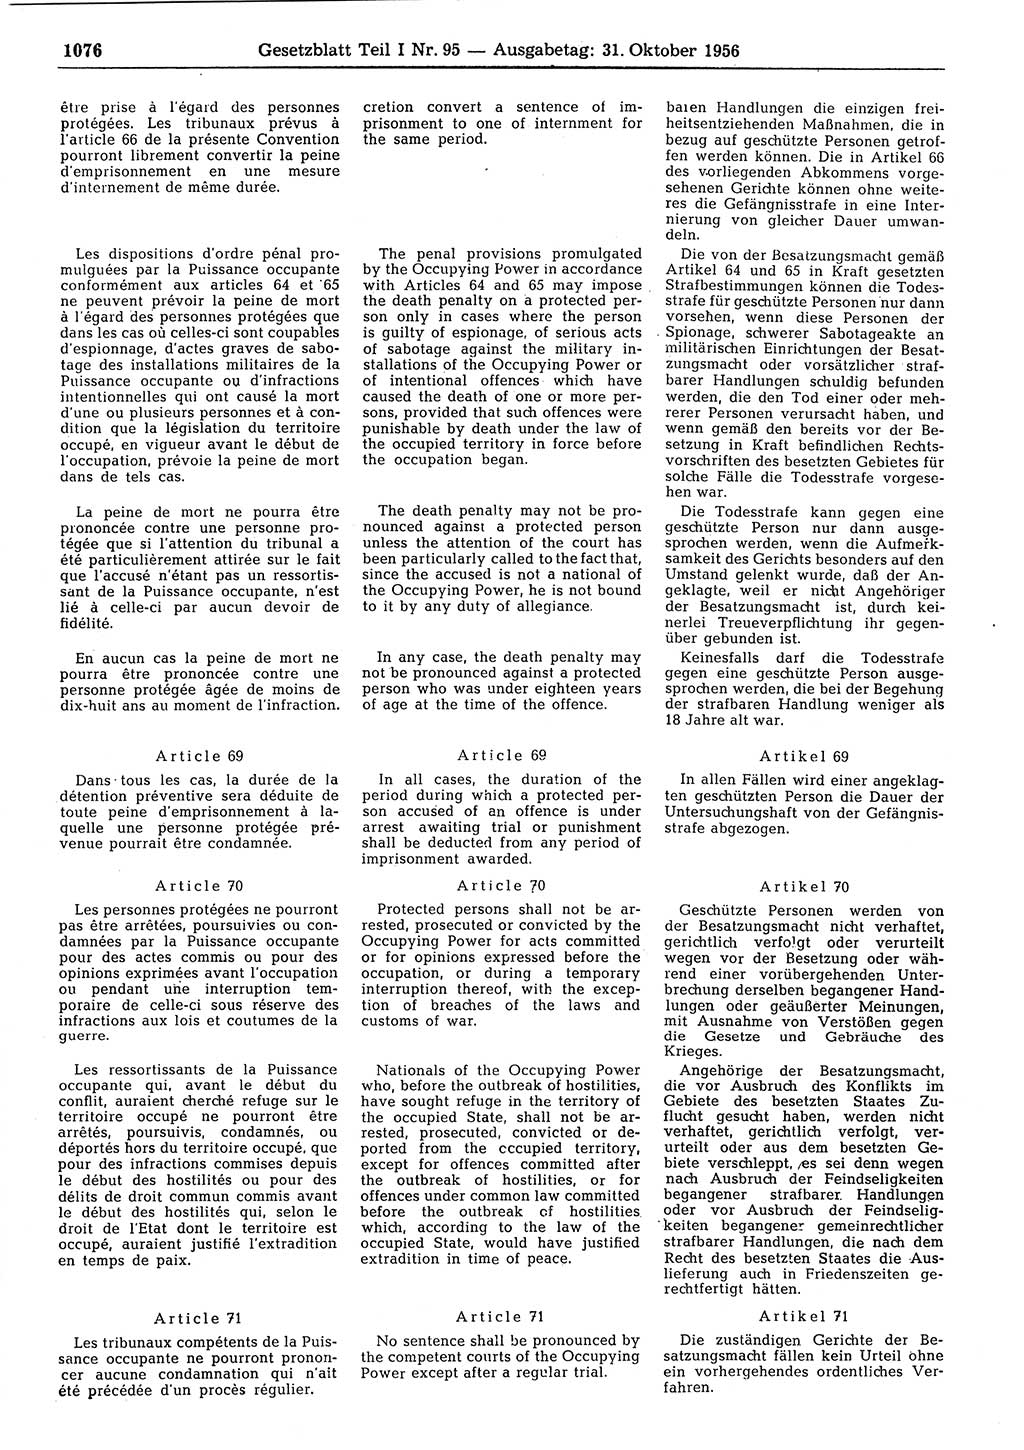 Gesetzblatt (GBl.) der Deutschen Demokratischen Republik (DDR) Teil Ⅰ 1956, Seite 1076 (GBl. DDR Ⅰ 1956, S. 1076)